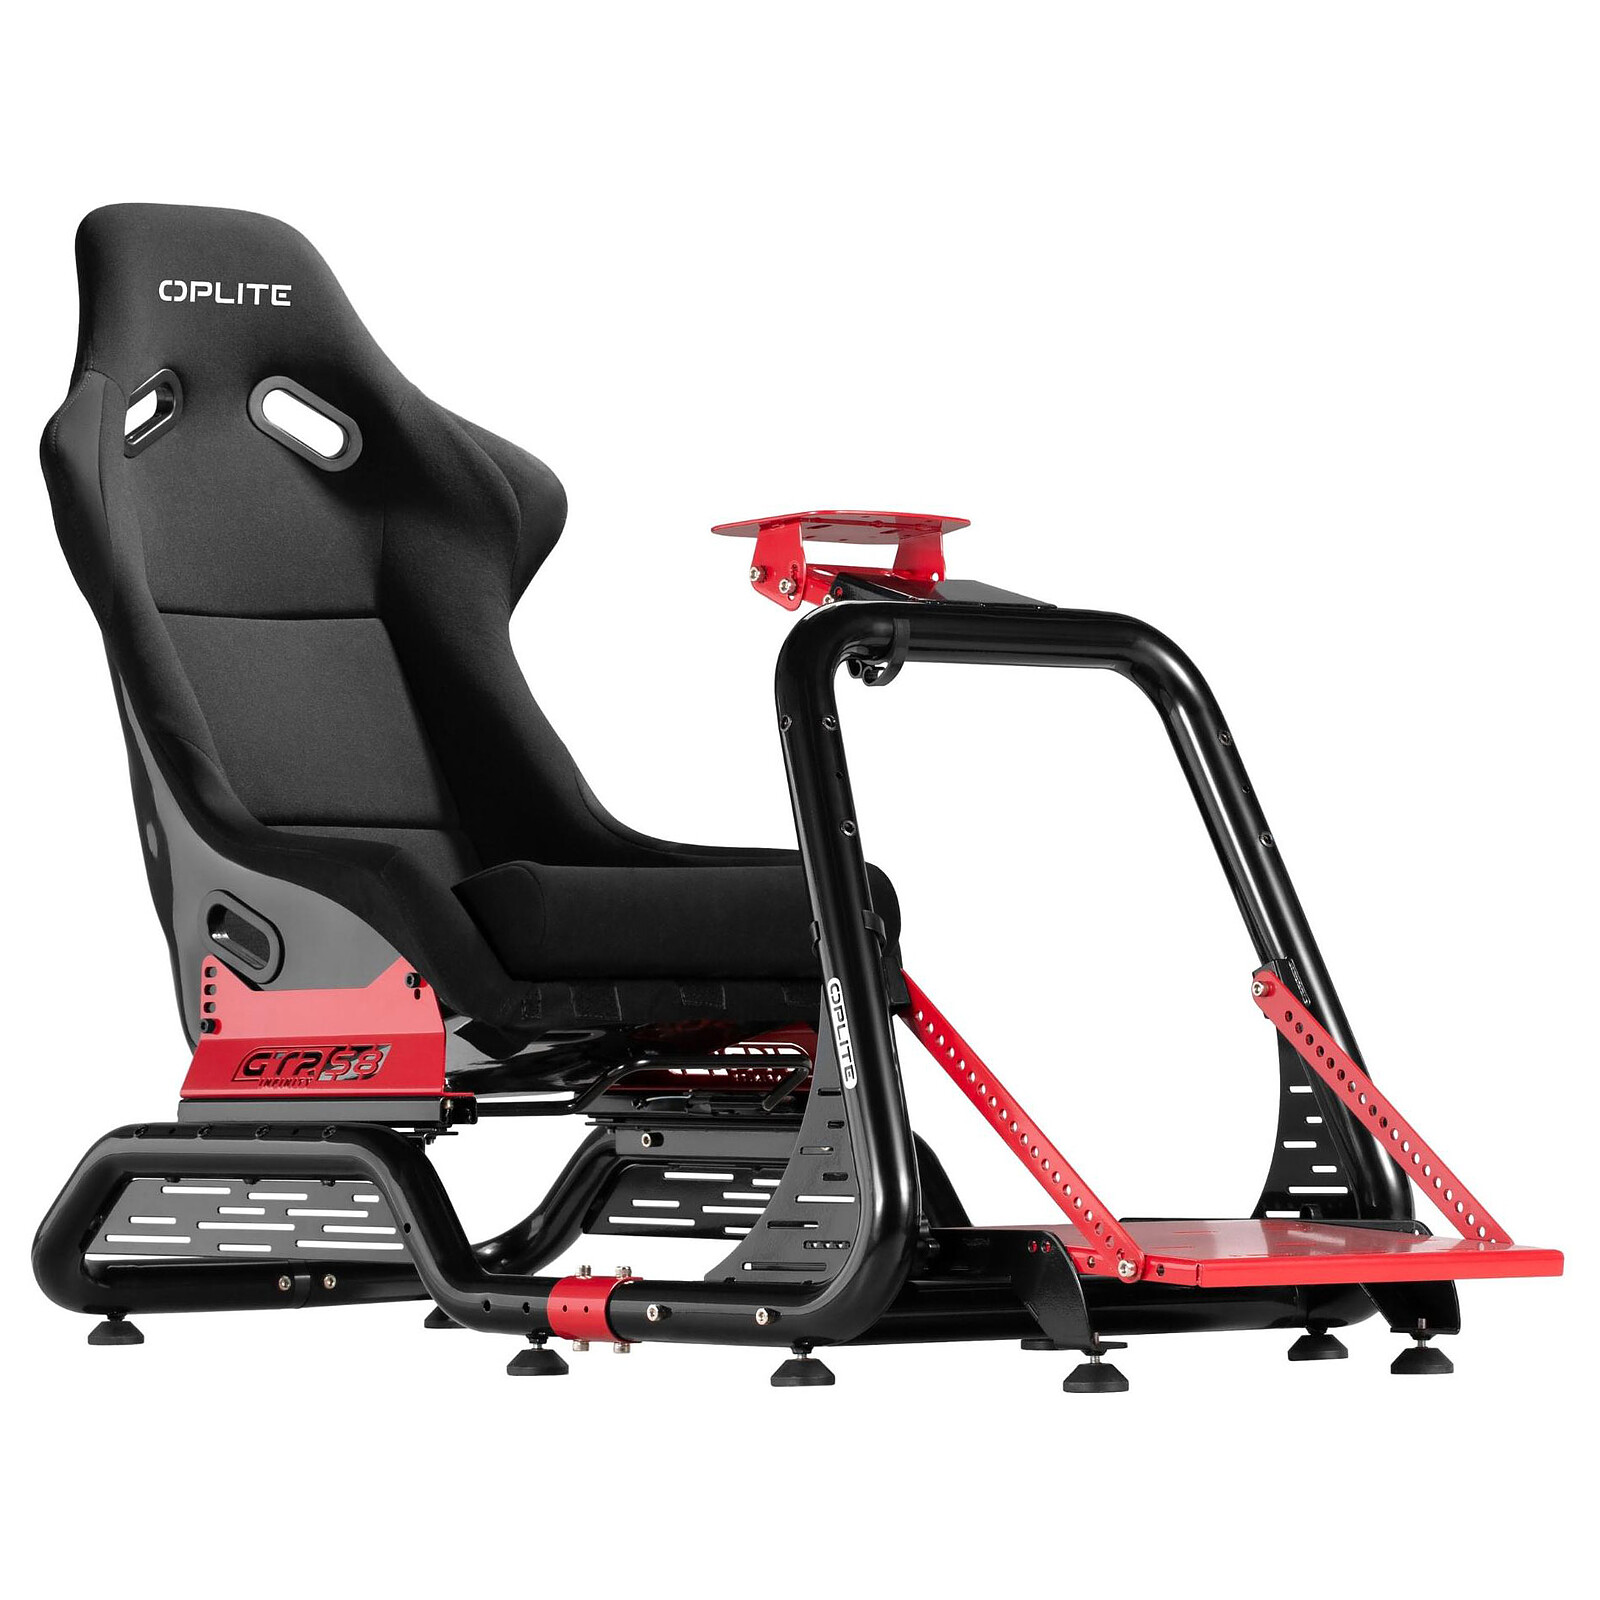 Cockpit SimRacing PlayStation Master Racer GTR - Simulador de Conducción,  Negro